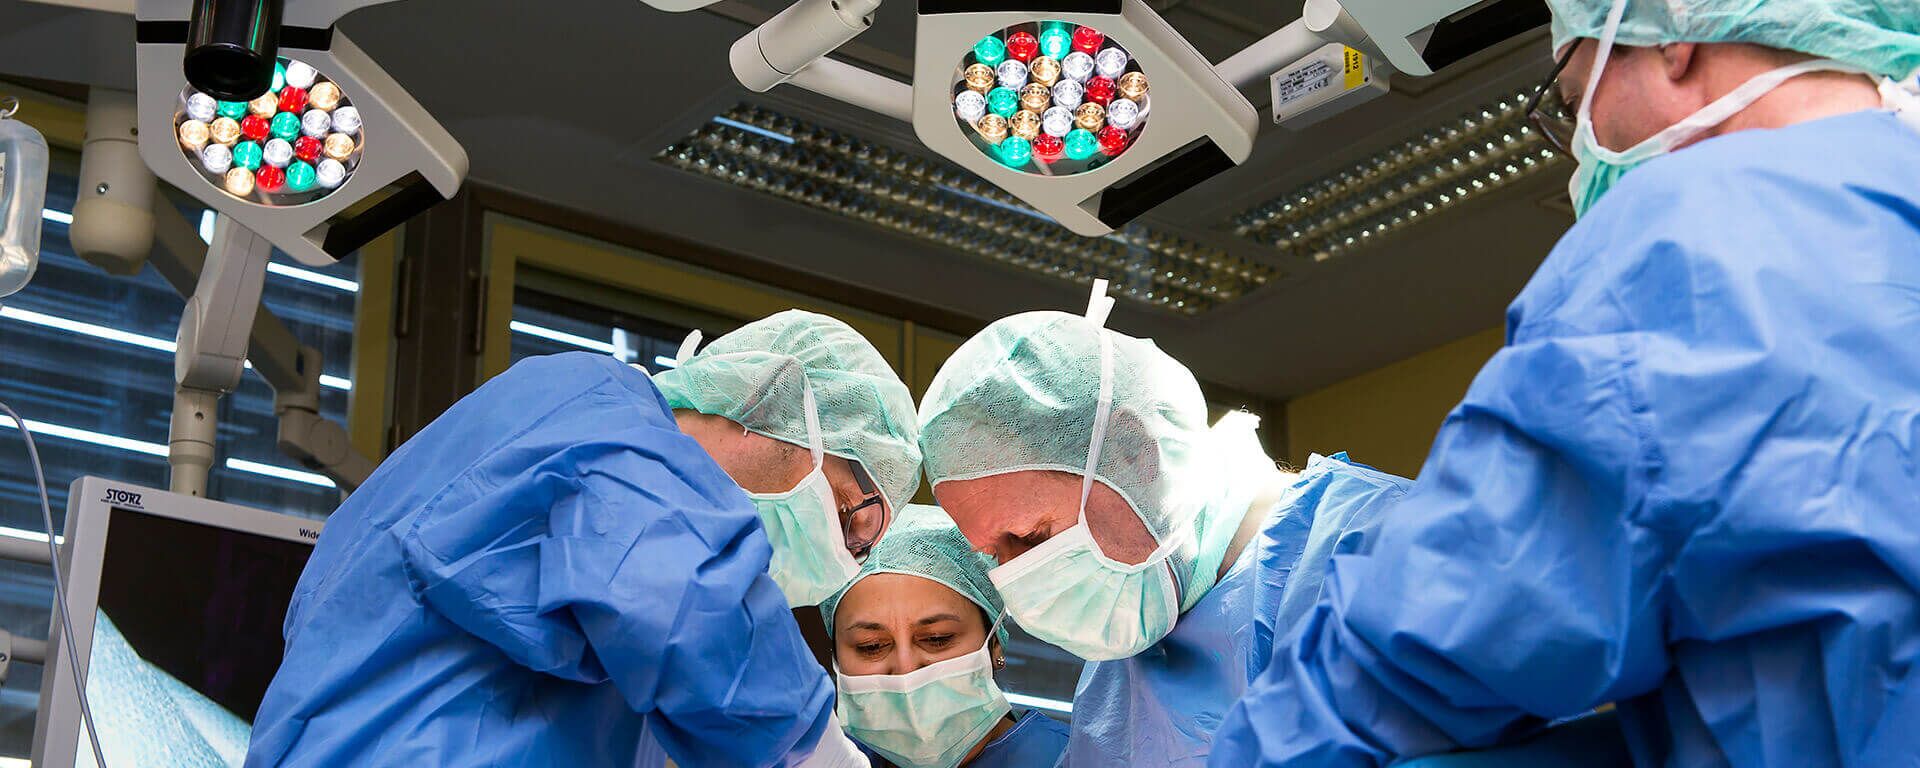 Foto: Chirurgen operieren, Teamarbeit